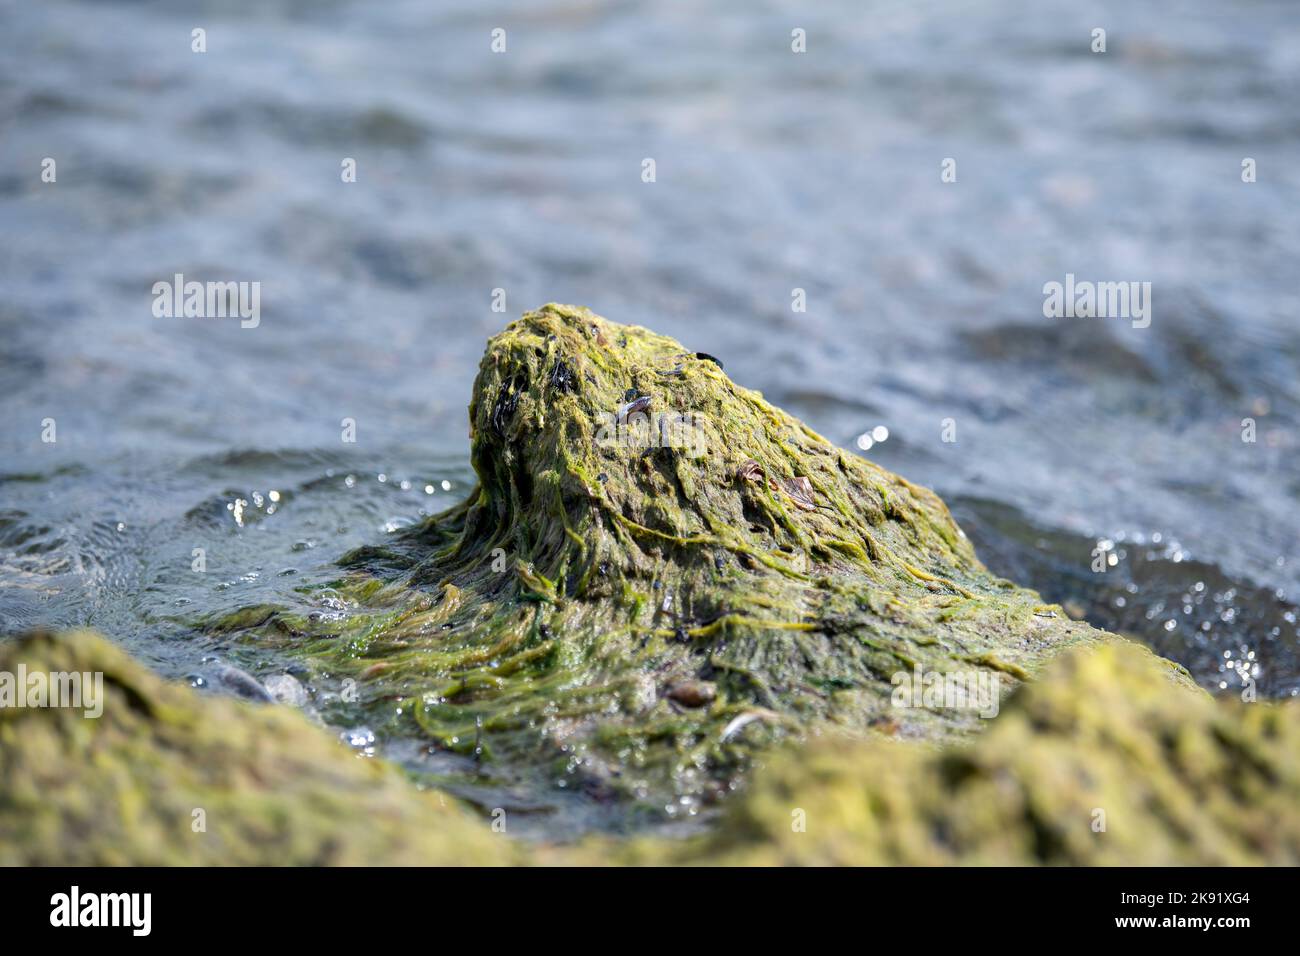 Rocas cubiertas de algas verdes en la playa de la costa del océano del mar. musgo  marino pegado a piedras. rocas cubiertas de algas verdes en agua de mar.  paisaje de verano